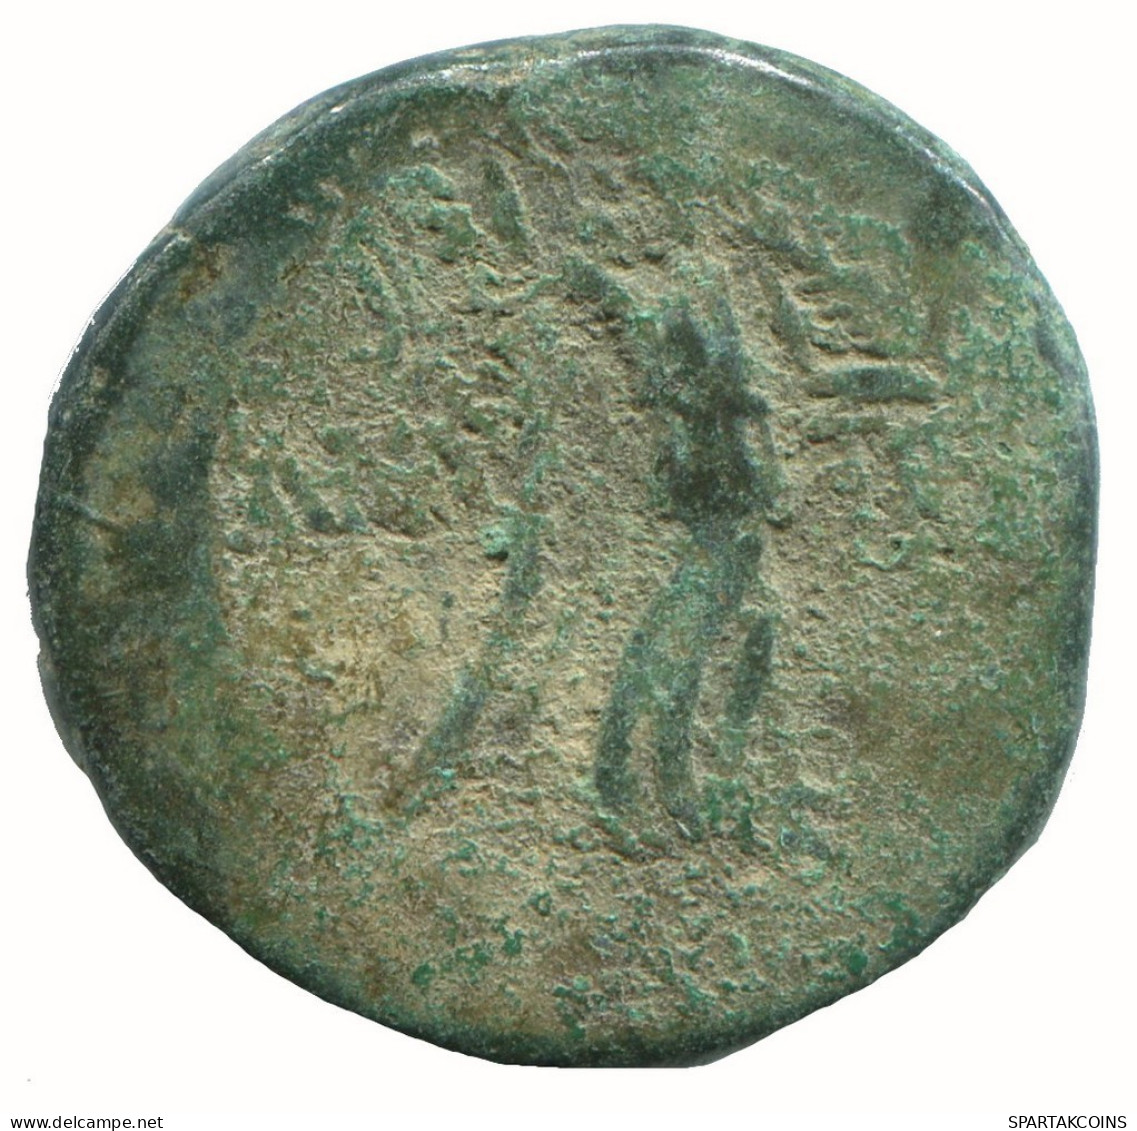 AMISOS PONTOS 100 BC Aegis With Facing Gorgon 6.7g/22mm #NNN1545.30.F.A - Greek